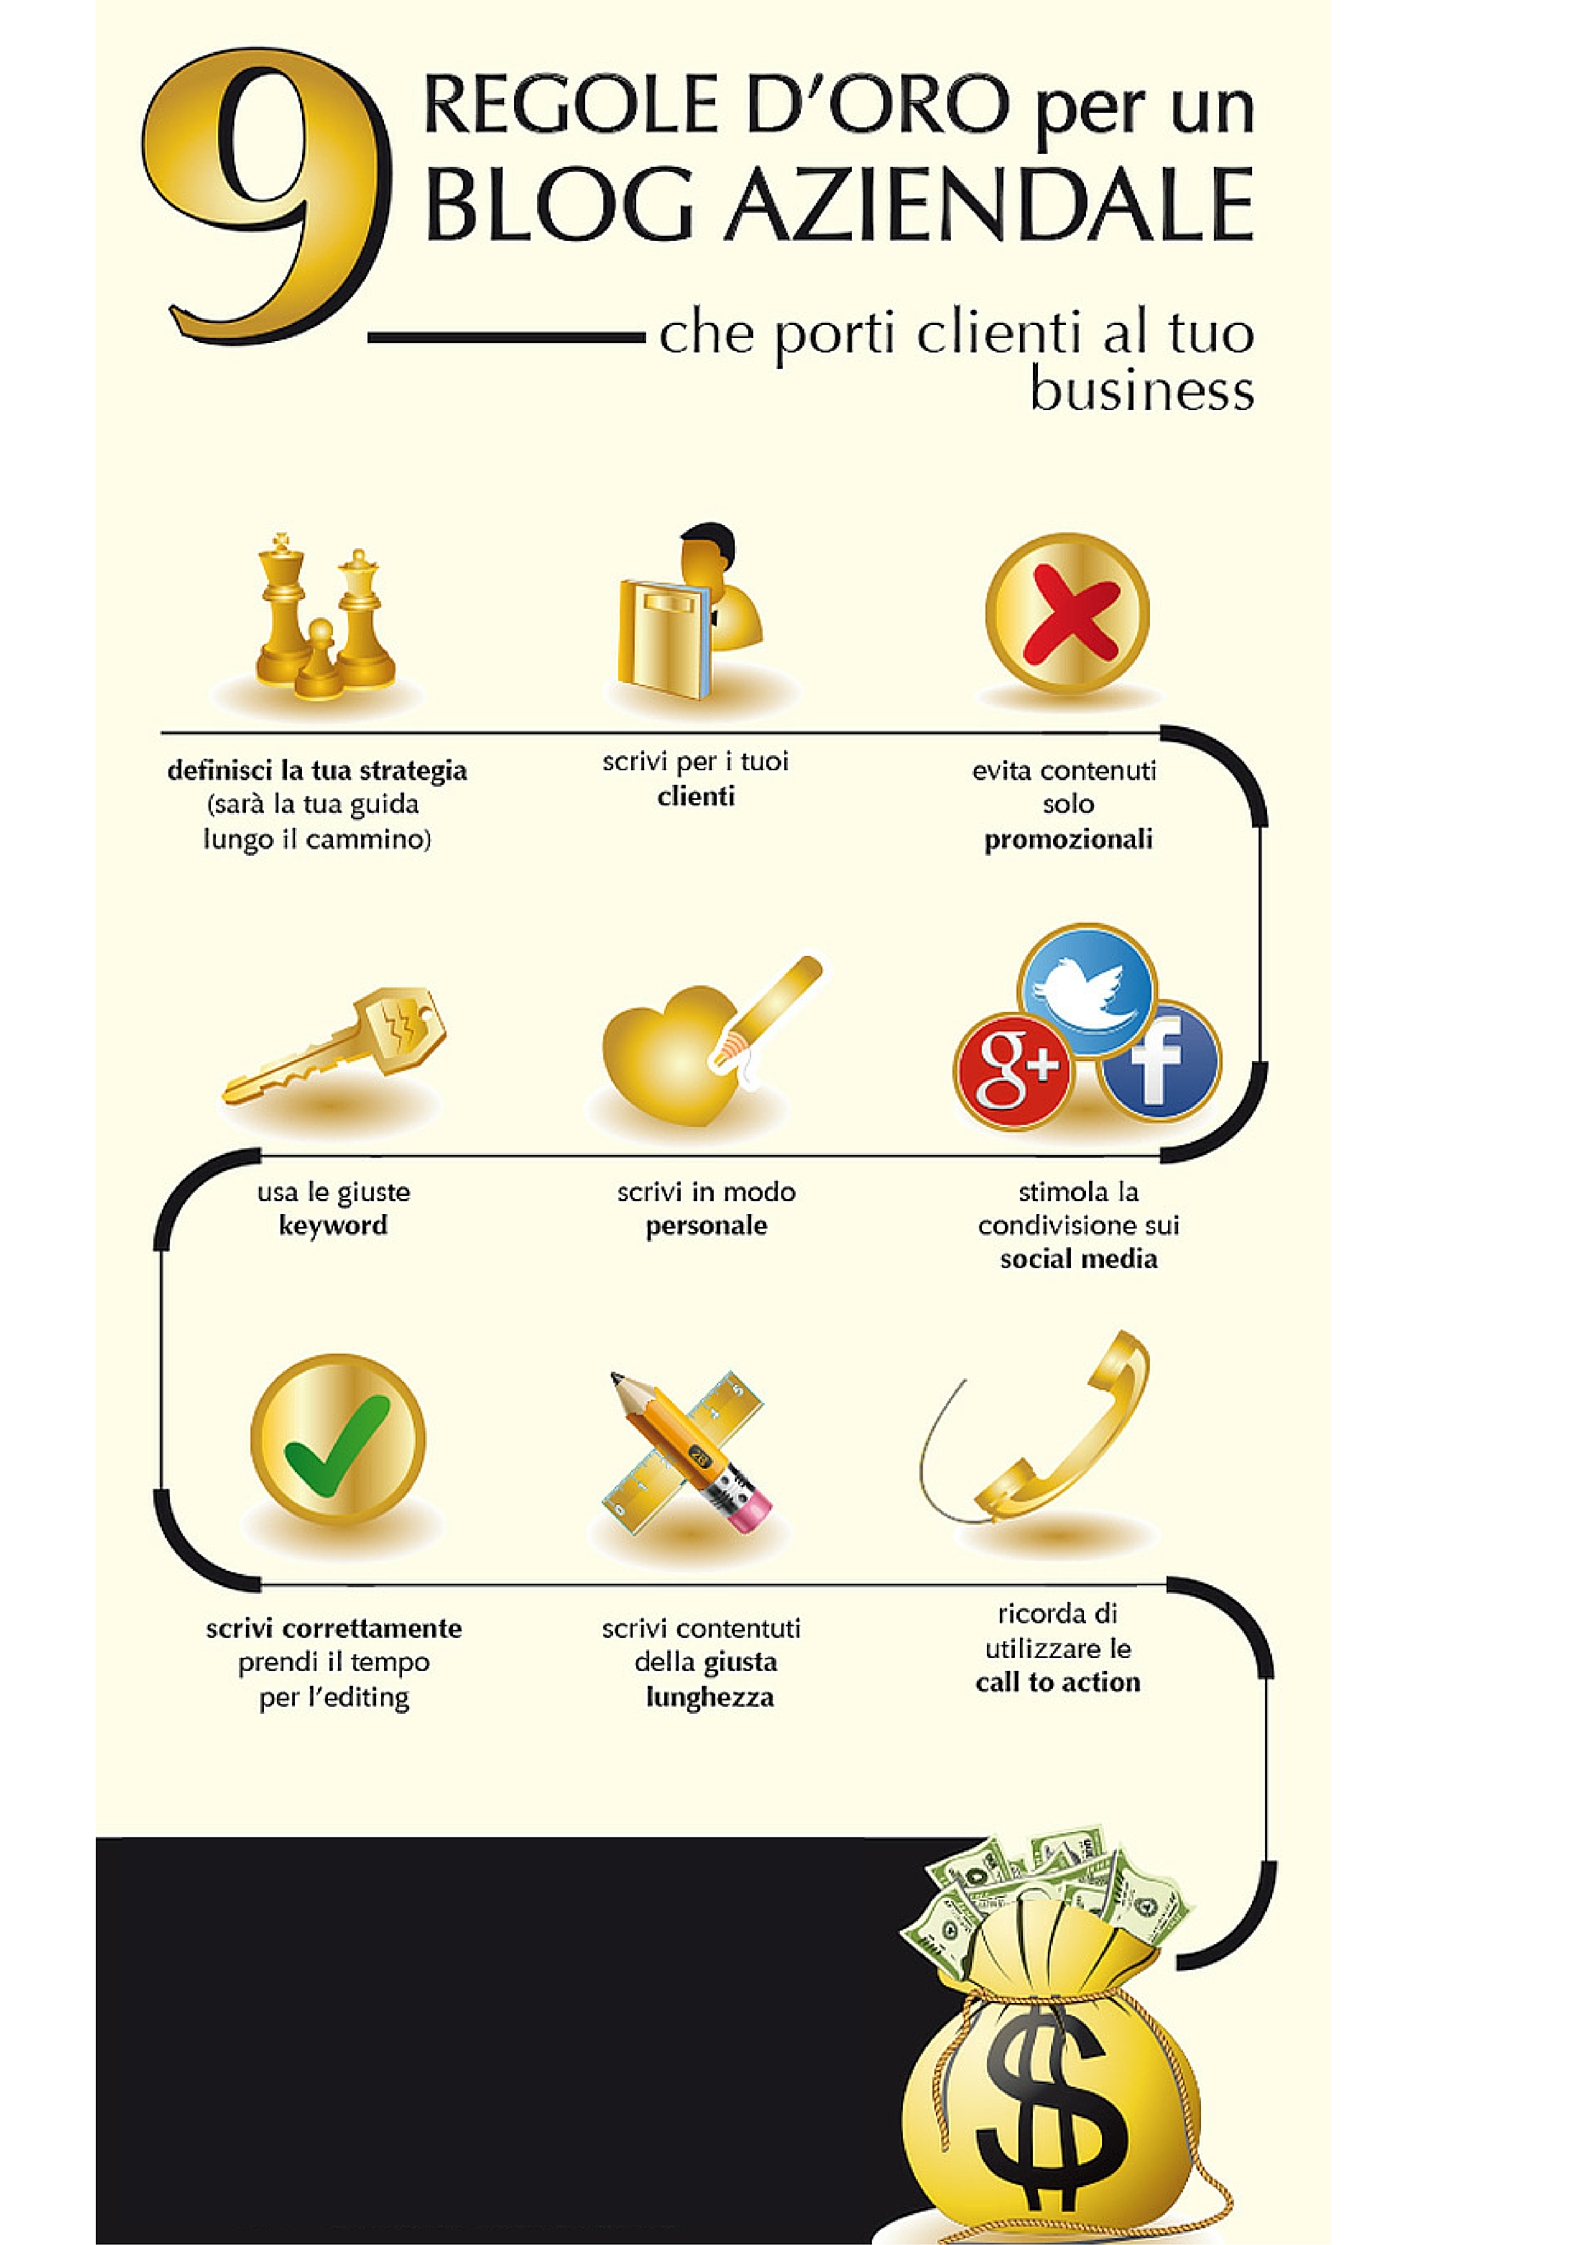 9 regole per un blog aziendale che porti clienti al tuo business [infografica]